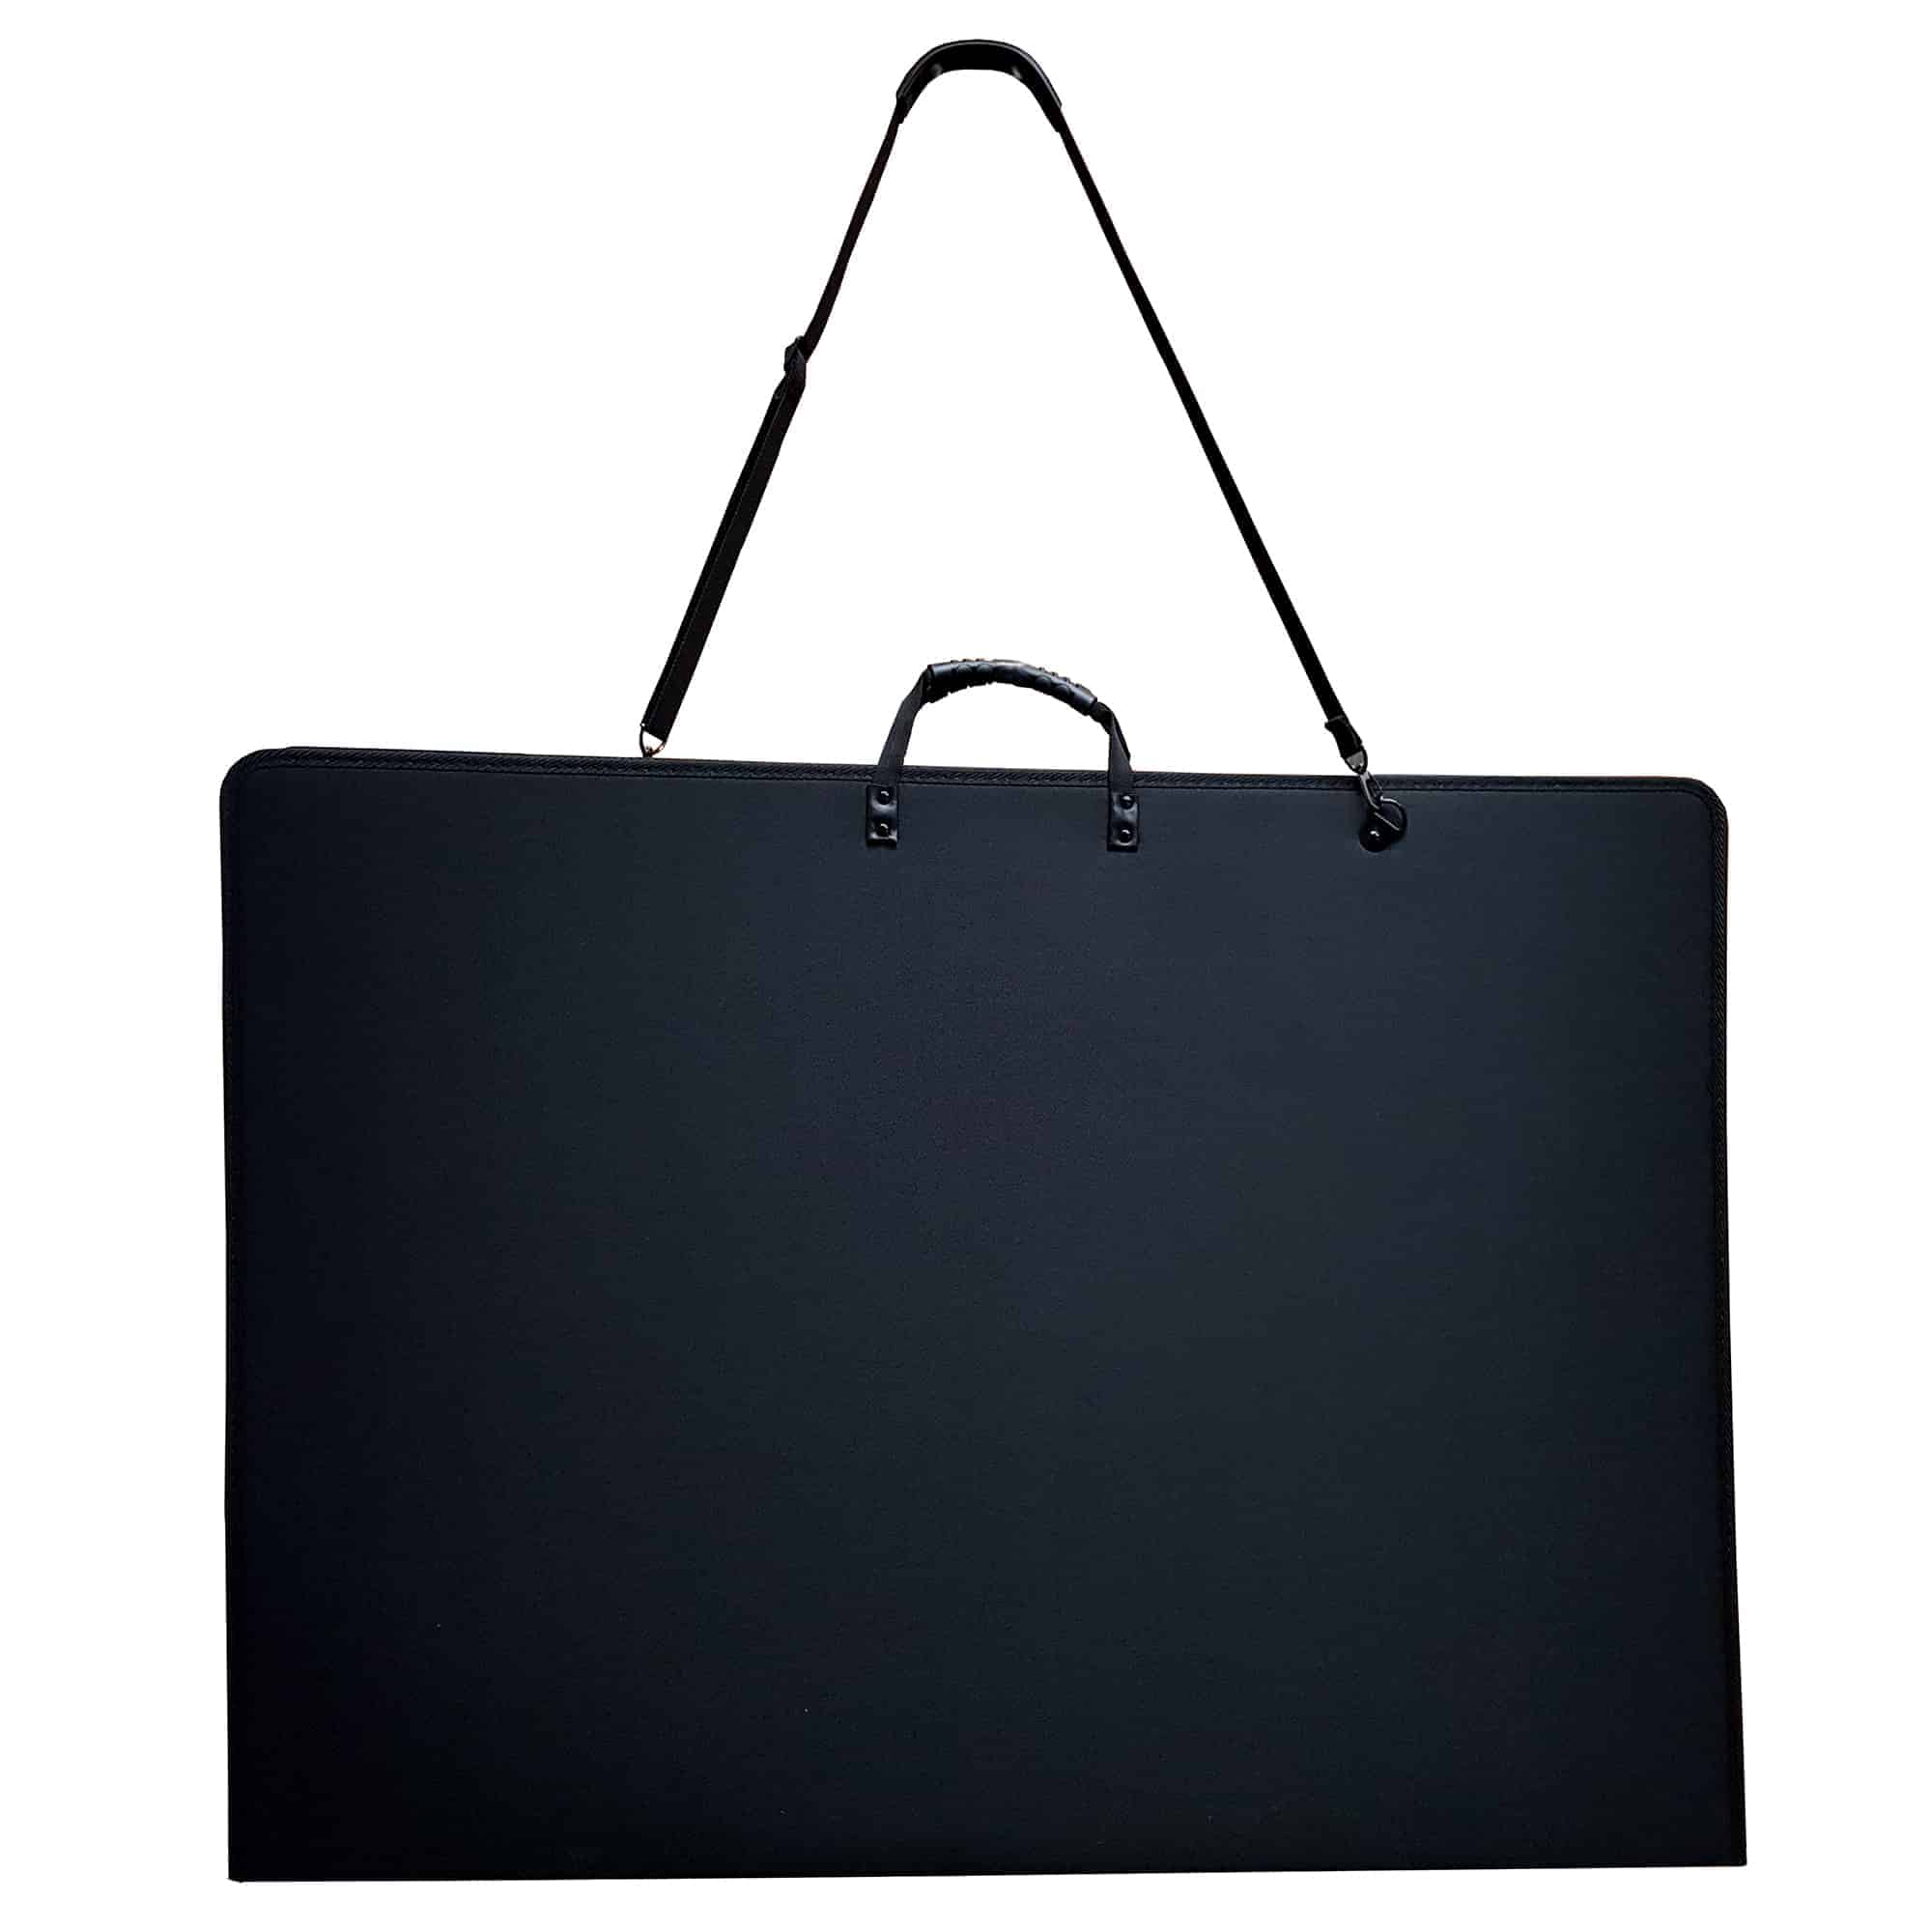 Art Portfolio Folder for Artwork for Artists and Students Poster Board Large Storage Bag Professional Art Portfolio Bag with Detachable Shoulder Straps 